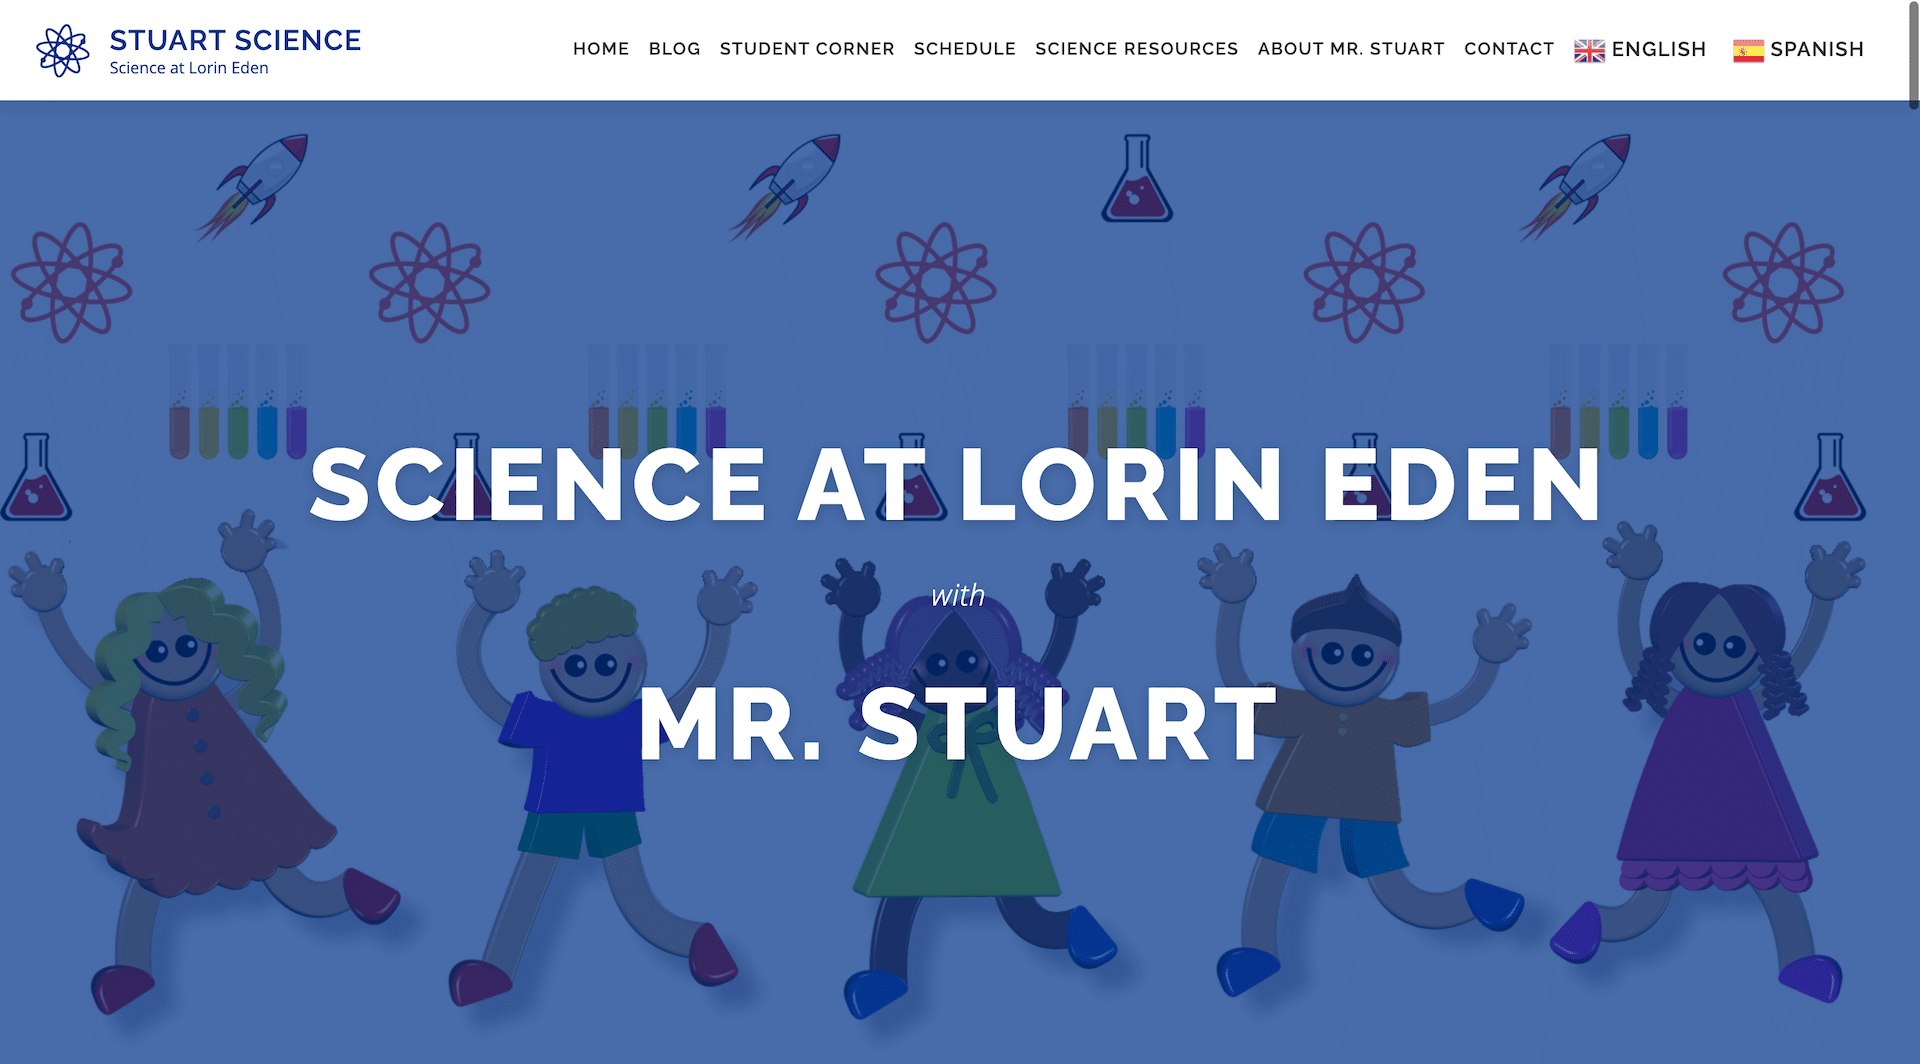 Stuart Science